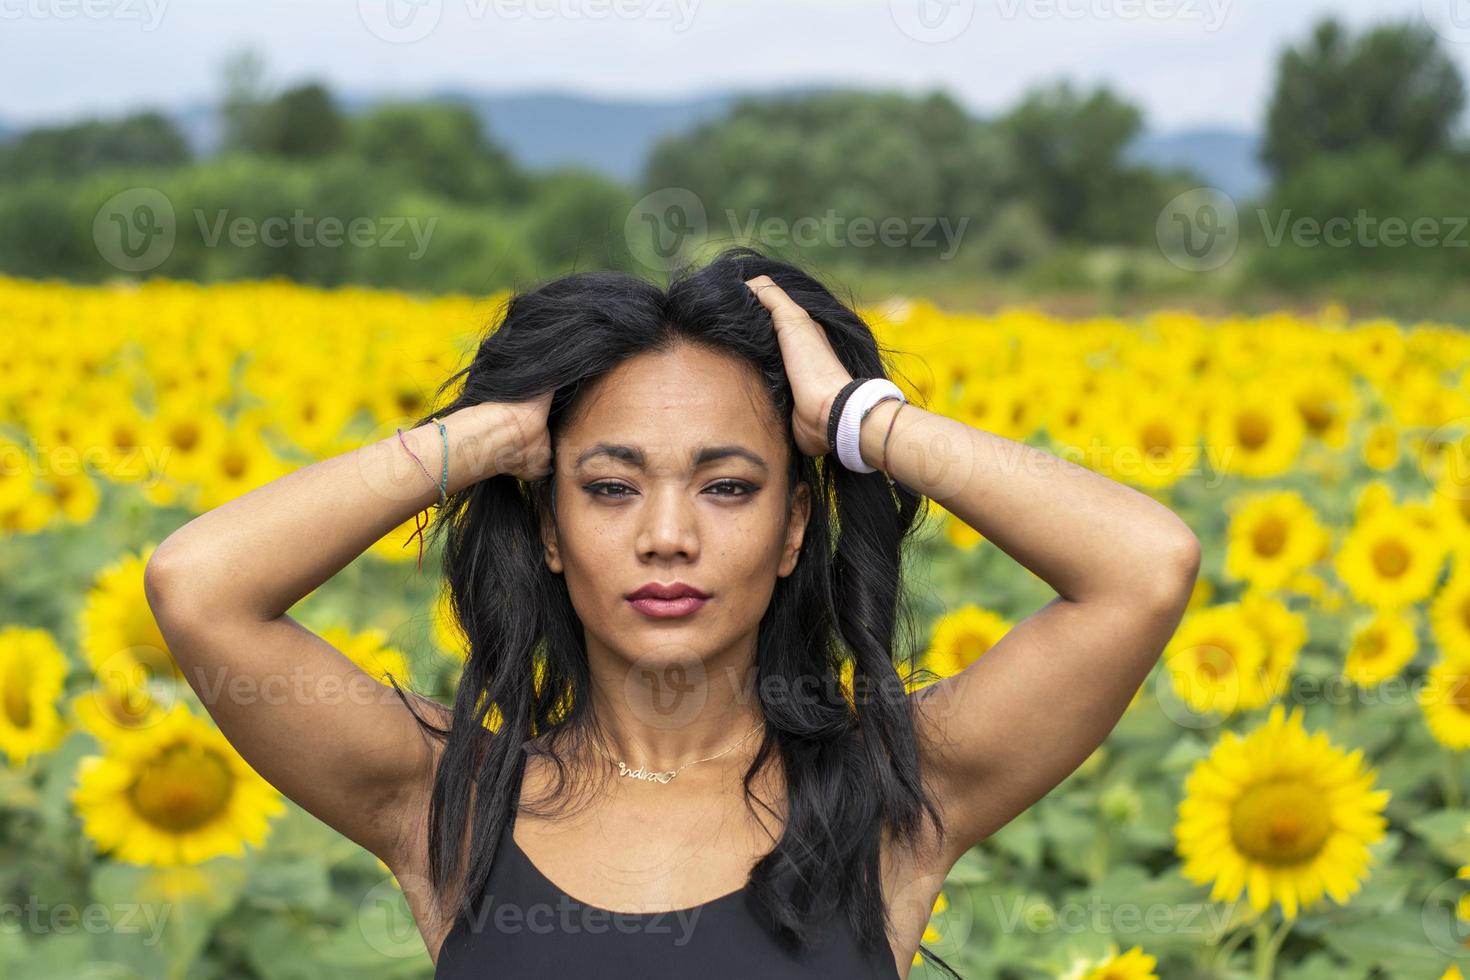 garota indiana cheirando uma flor de girassol foto